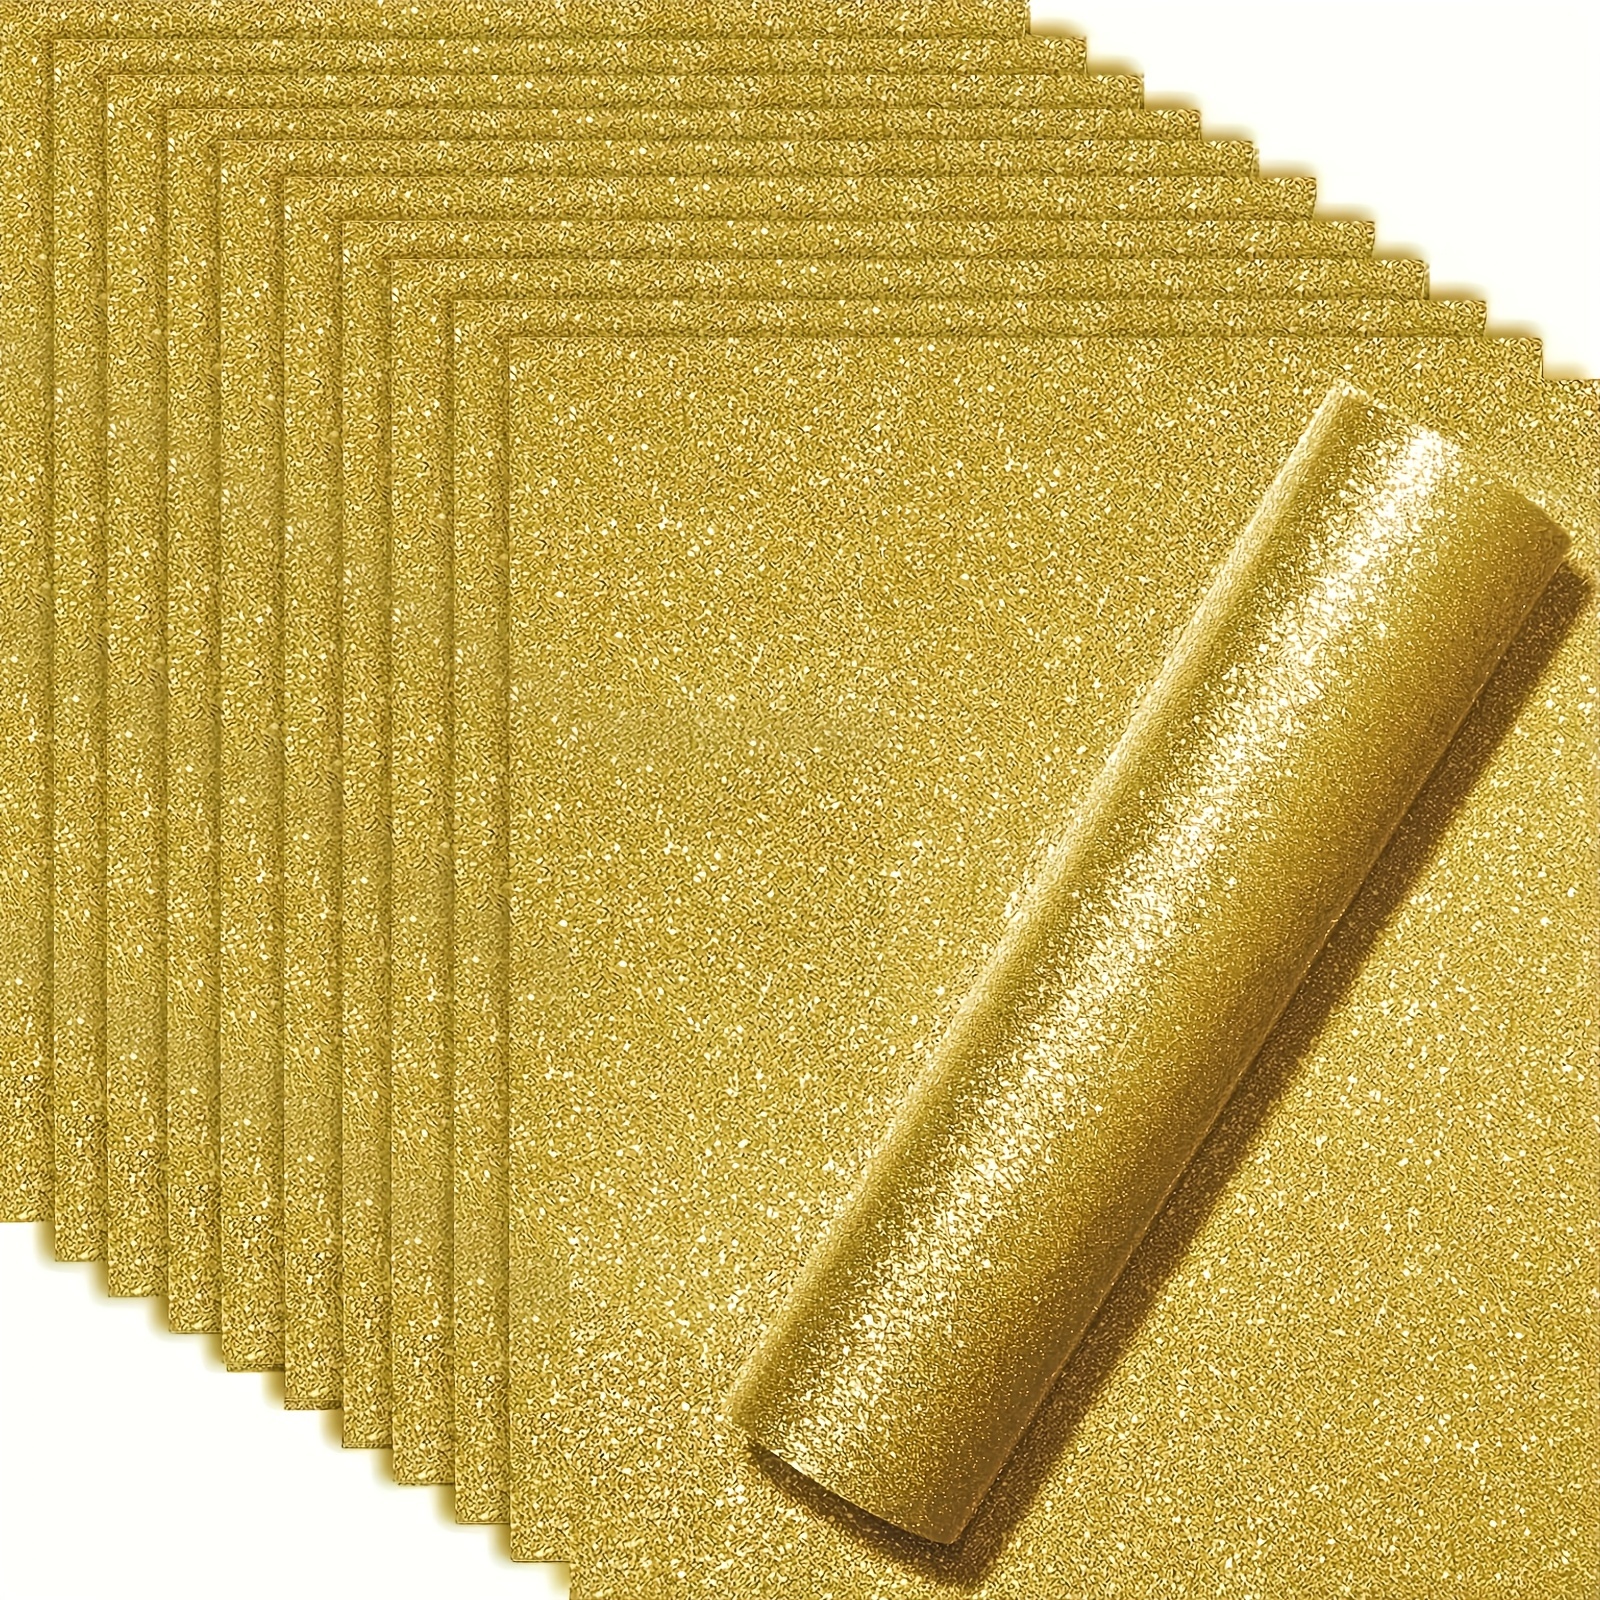 Golden Glitter Htv Vinyl For Cricut Machine Craft Vinyl Roll For